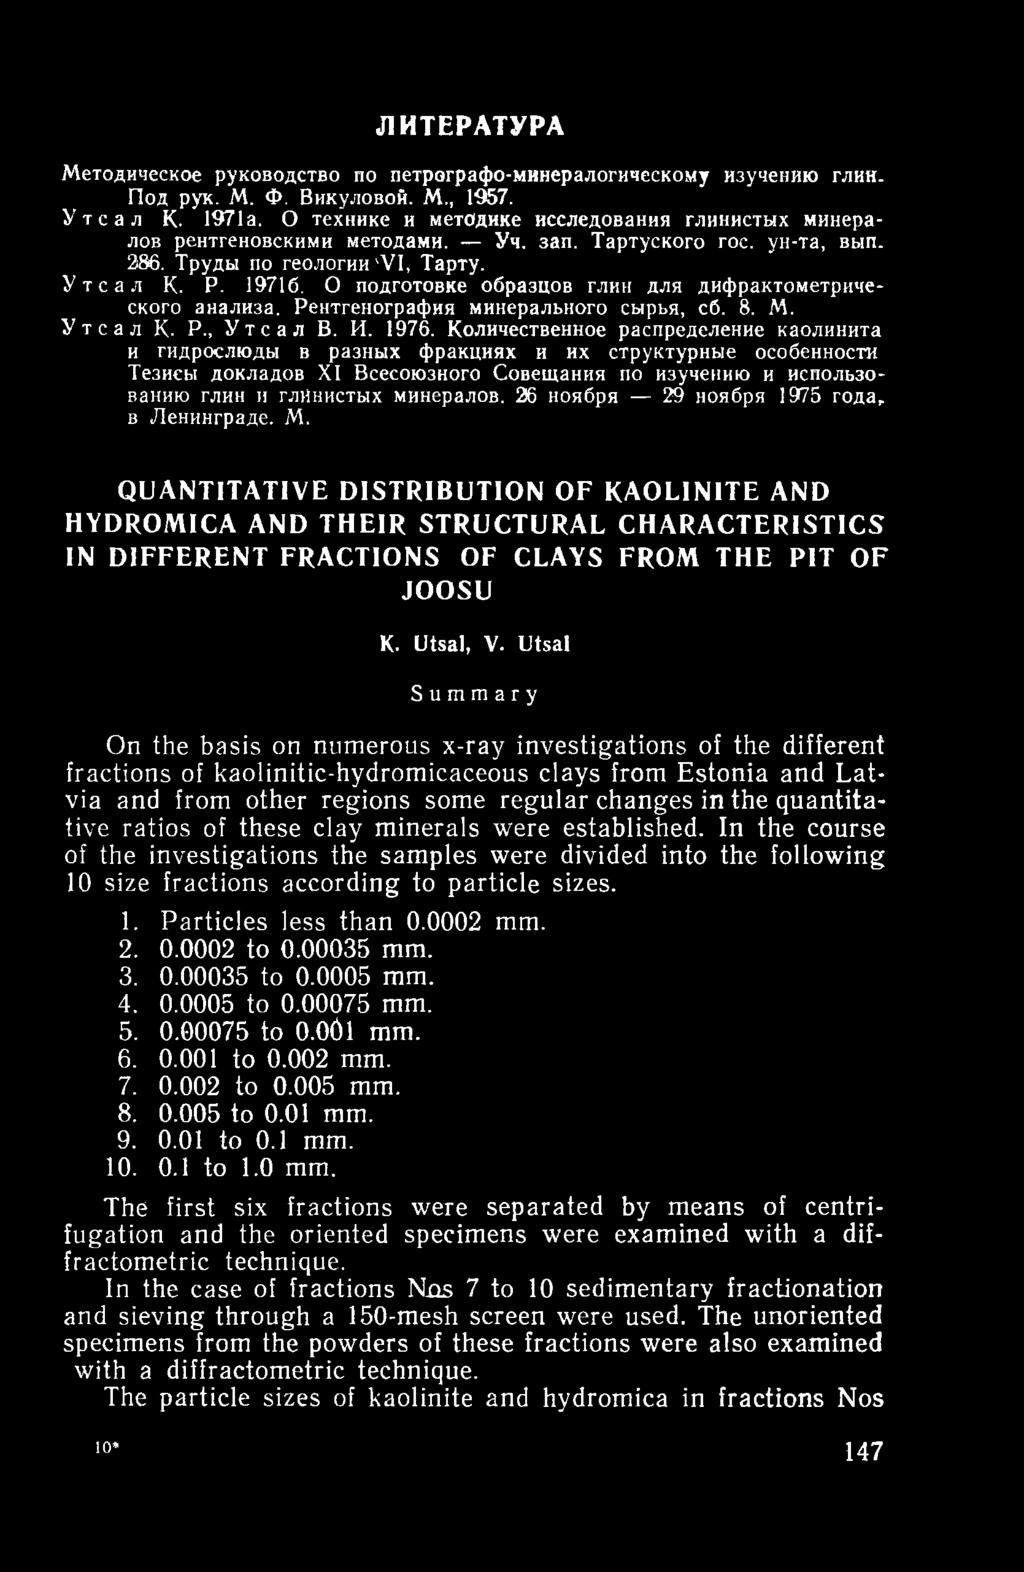 О подготовке образцов глин для дифрактометрического анализа. Рентгенография минерального сырья, сб. 8. М. Утсал К. Р., Уте а л В. И. 1976.